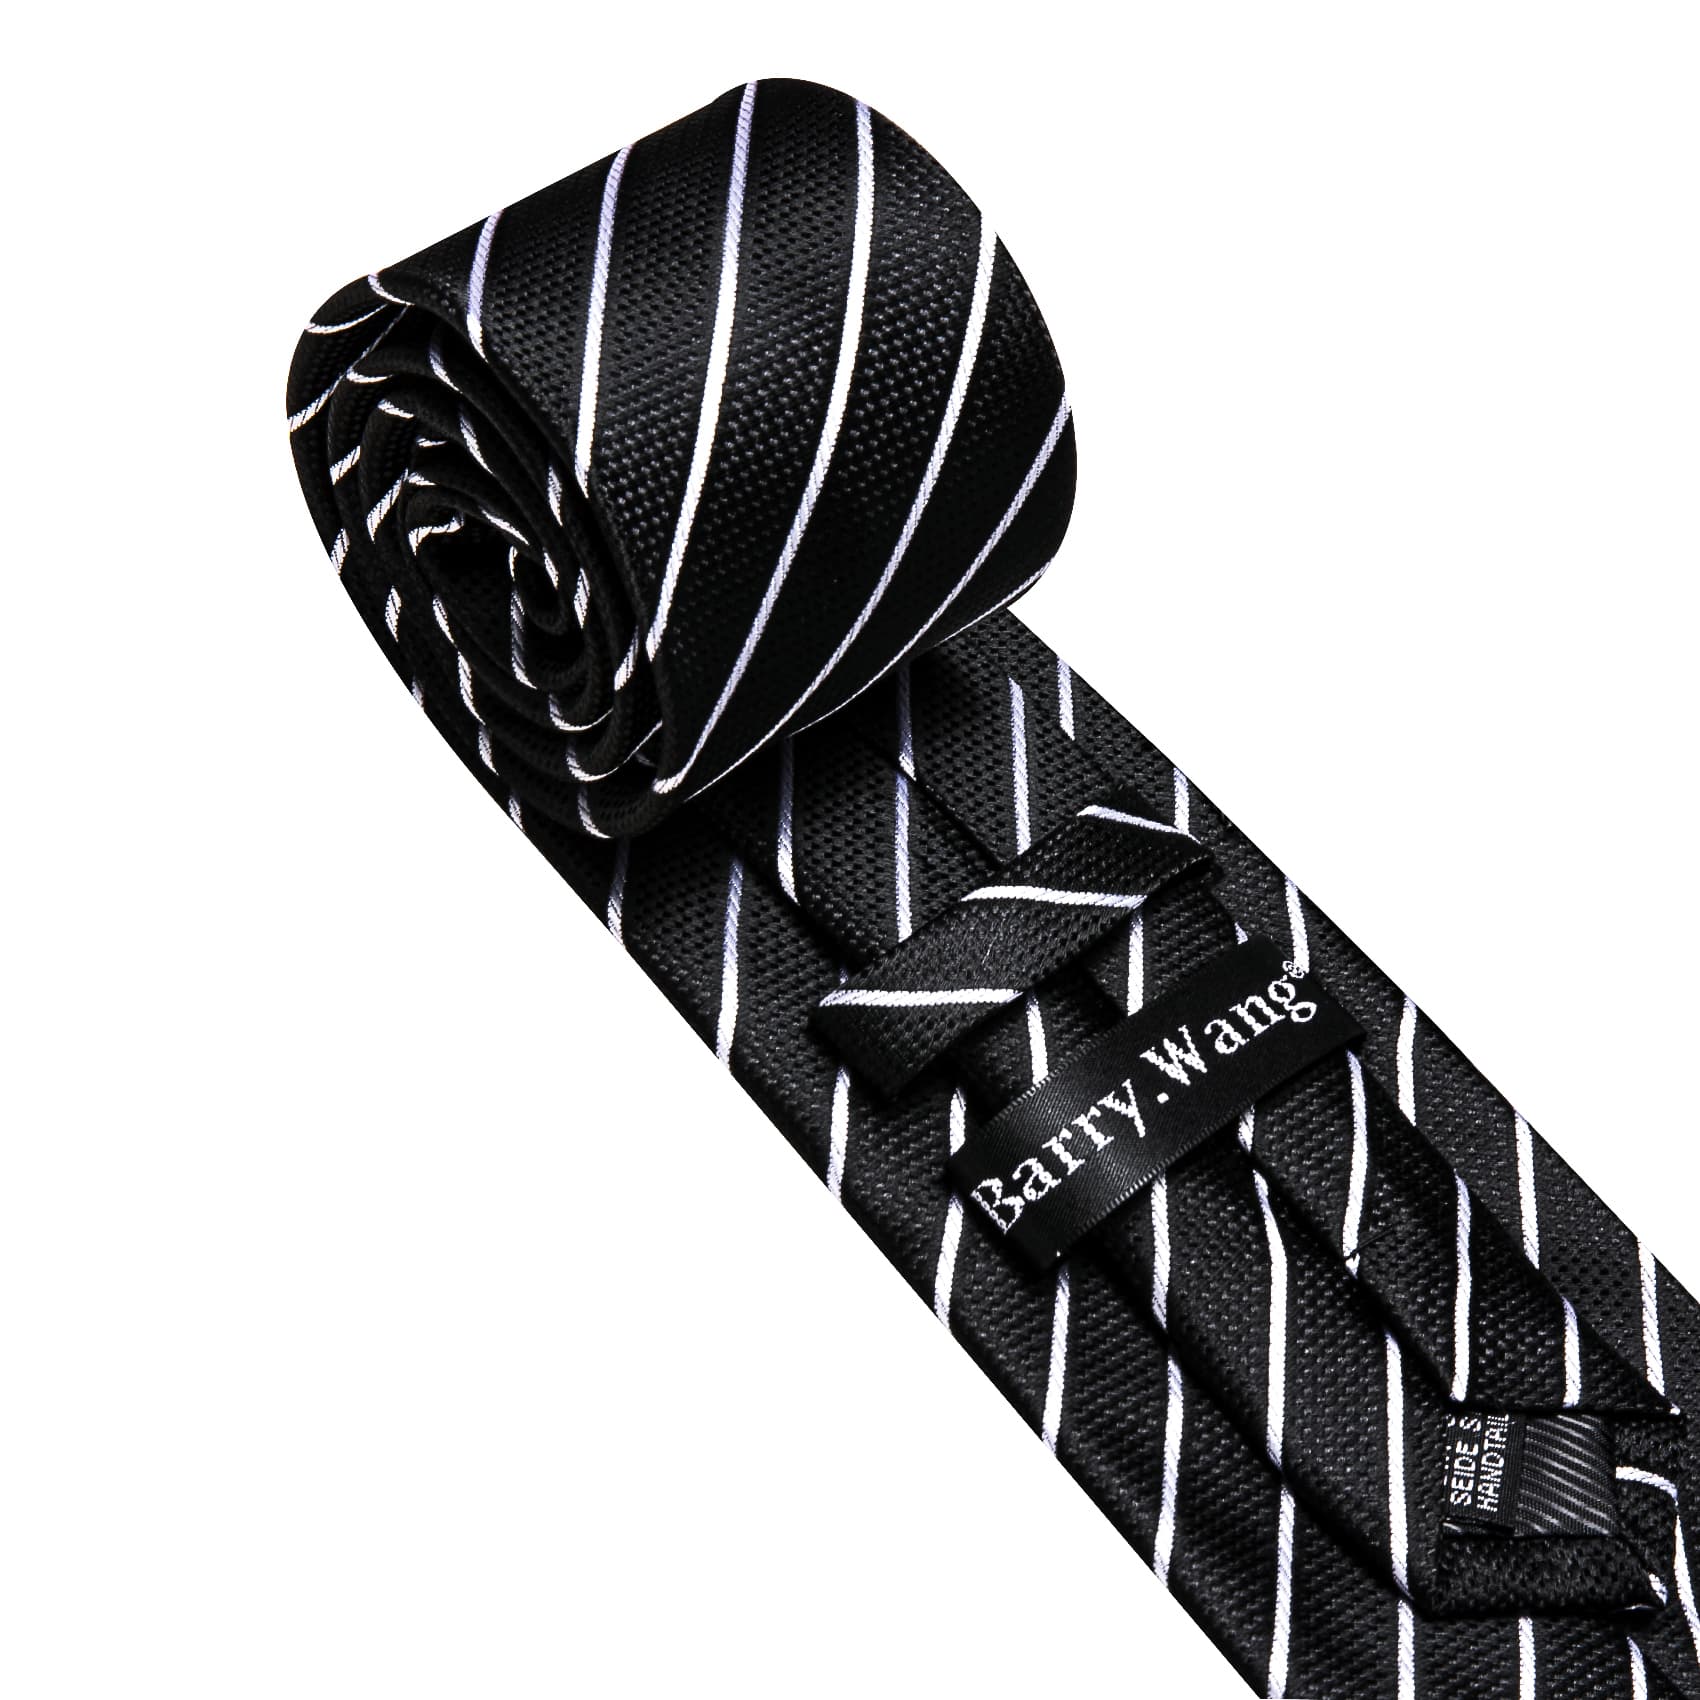  Black Tie White Lines Striped Necktie Men's Tie Set